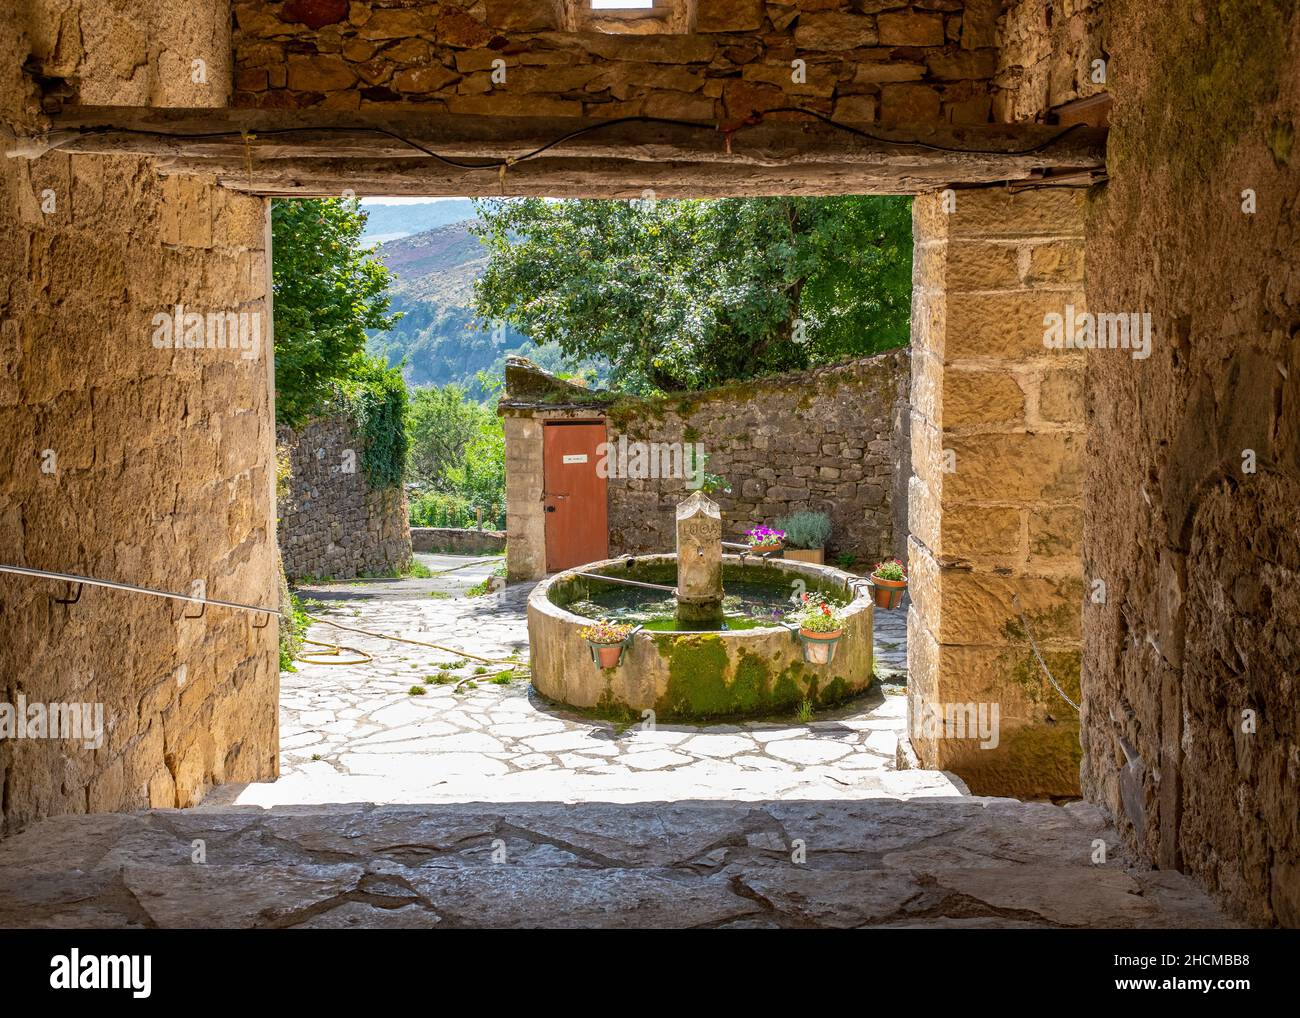 Fontaine vue à travers un porche situé dans le village de barre-des-Cévennes, (sud de la France), pris un matin d'été ensoleillé sans personne Banque D'Images